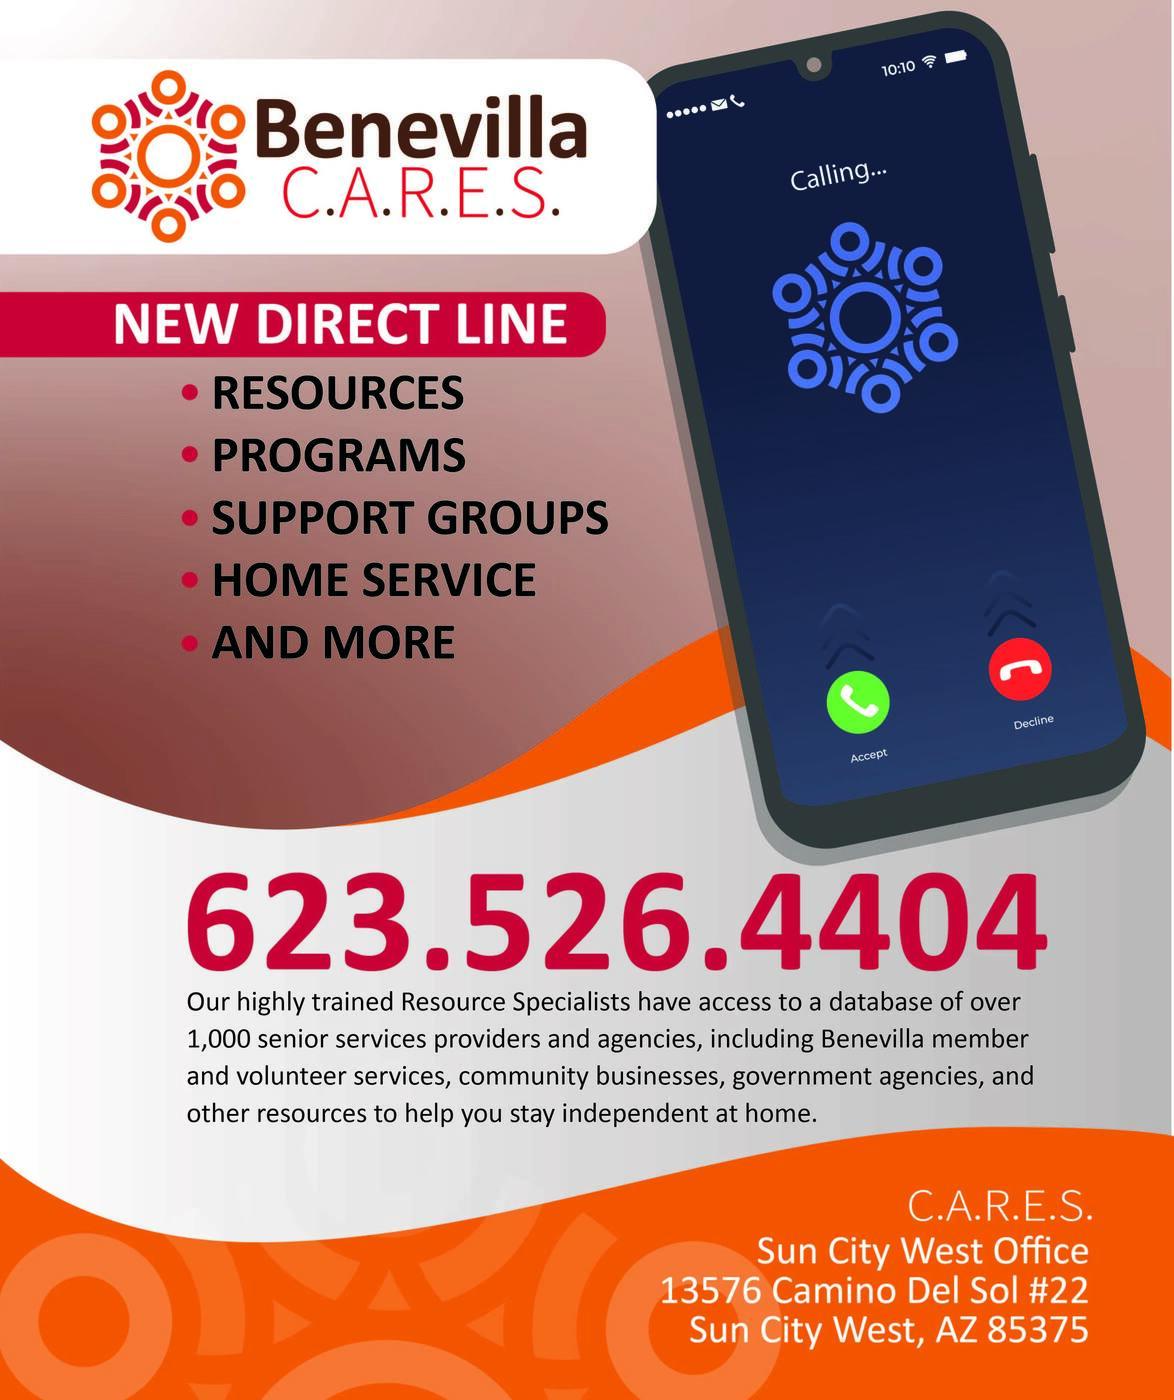 Benevilla C.A.R.E.S. Resource Phone Line